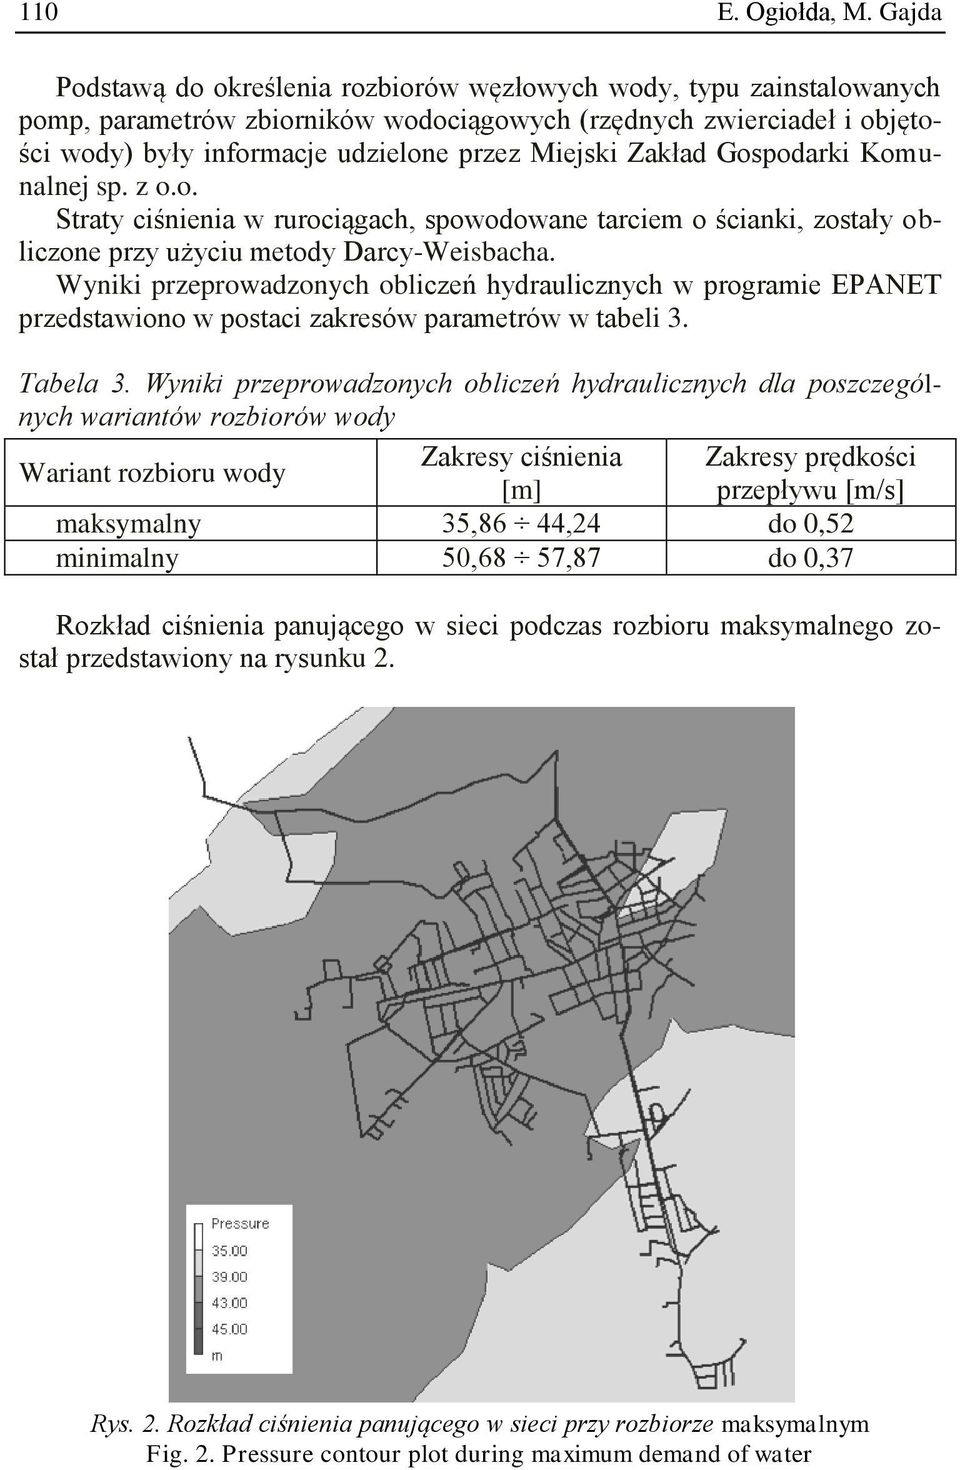 Zakład Gospodarki Komunalnej sp. z o.o. Straty ciśnienia w rurociągach, spowodowane tarciem o ścianki, zostały obliczone przy użyciu metody Darcy-Weisbacha.